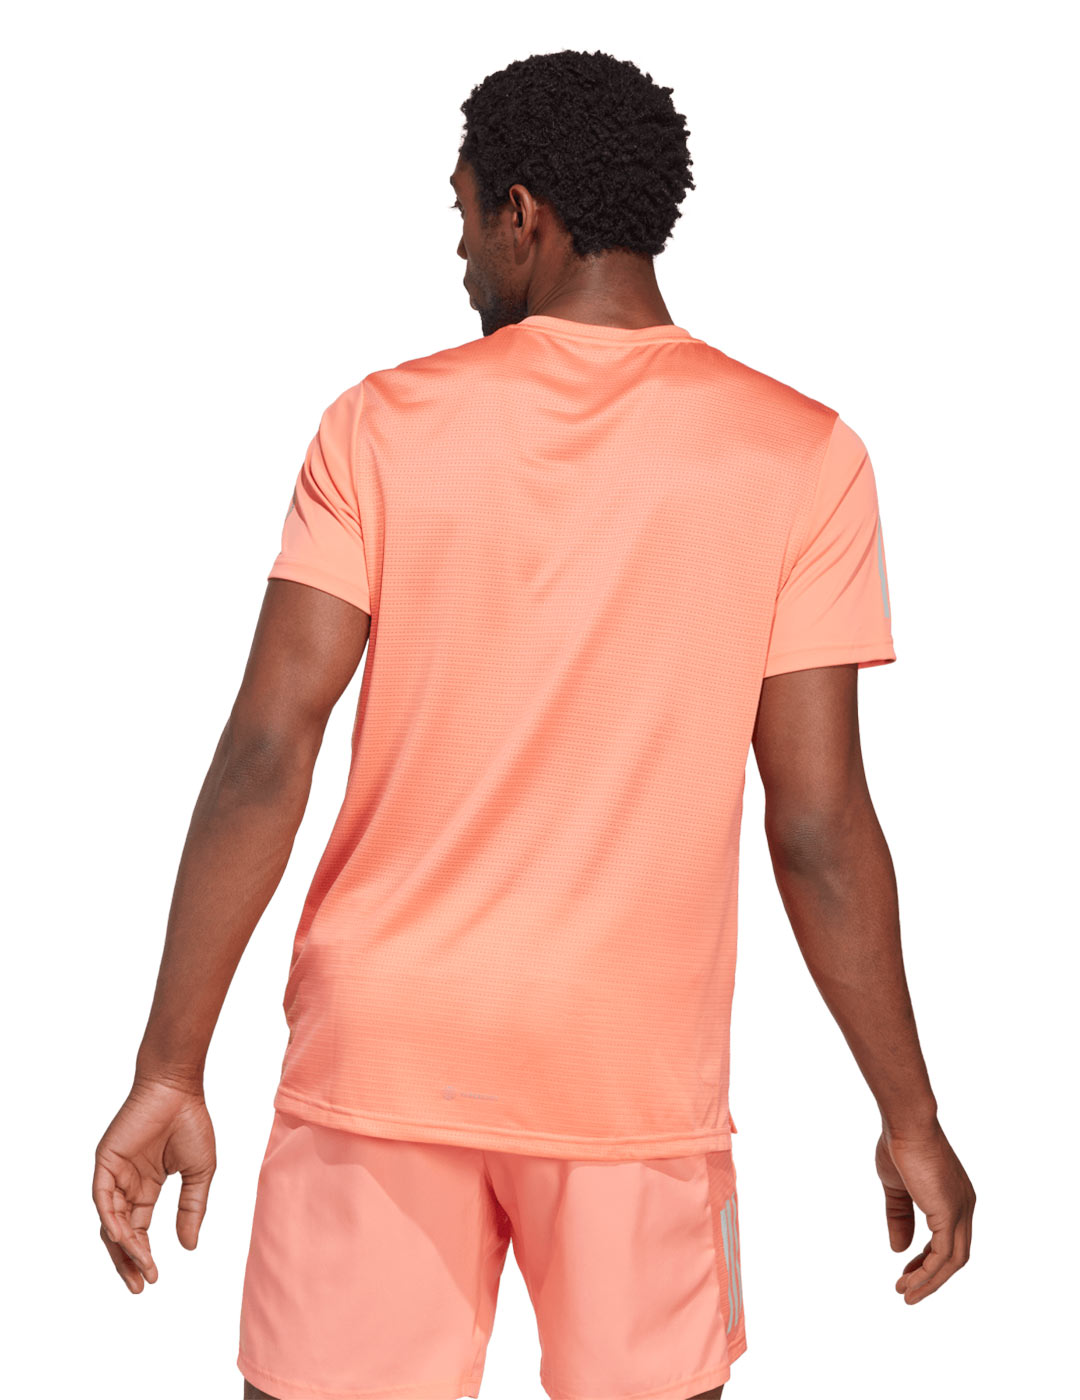 camiseta técnica adidas manga corta para hombre OWN THE RUN , naranja